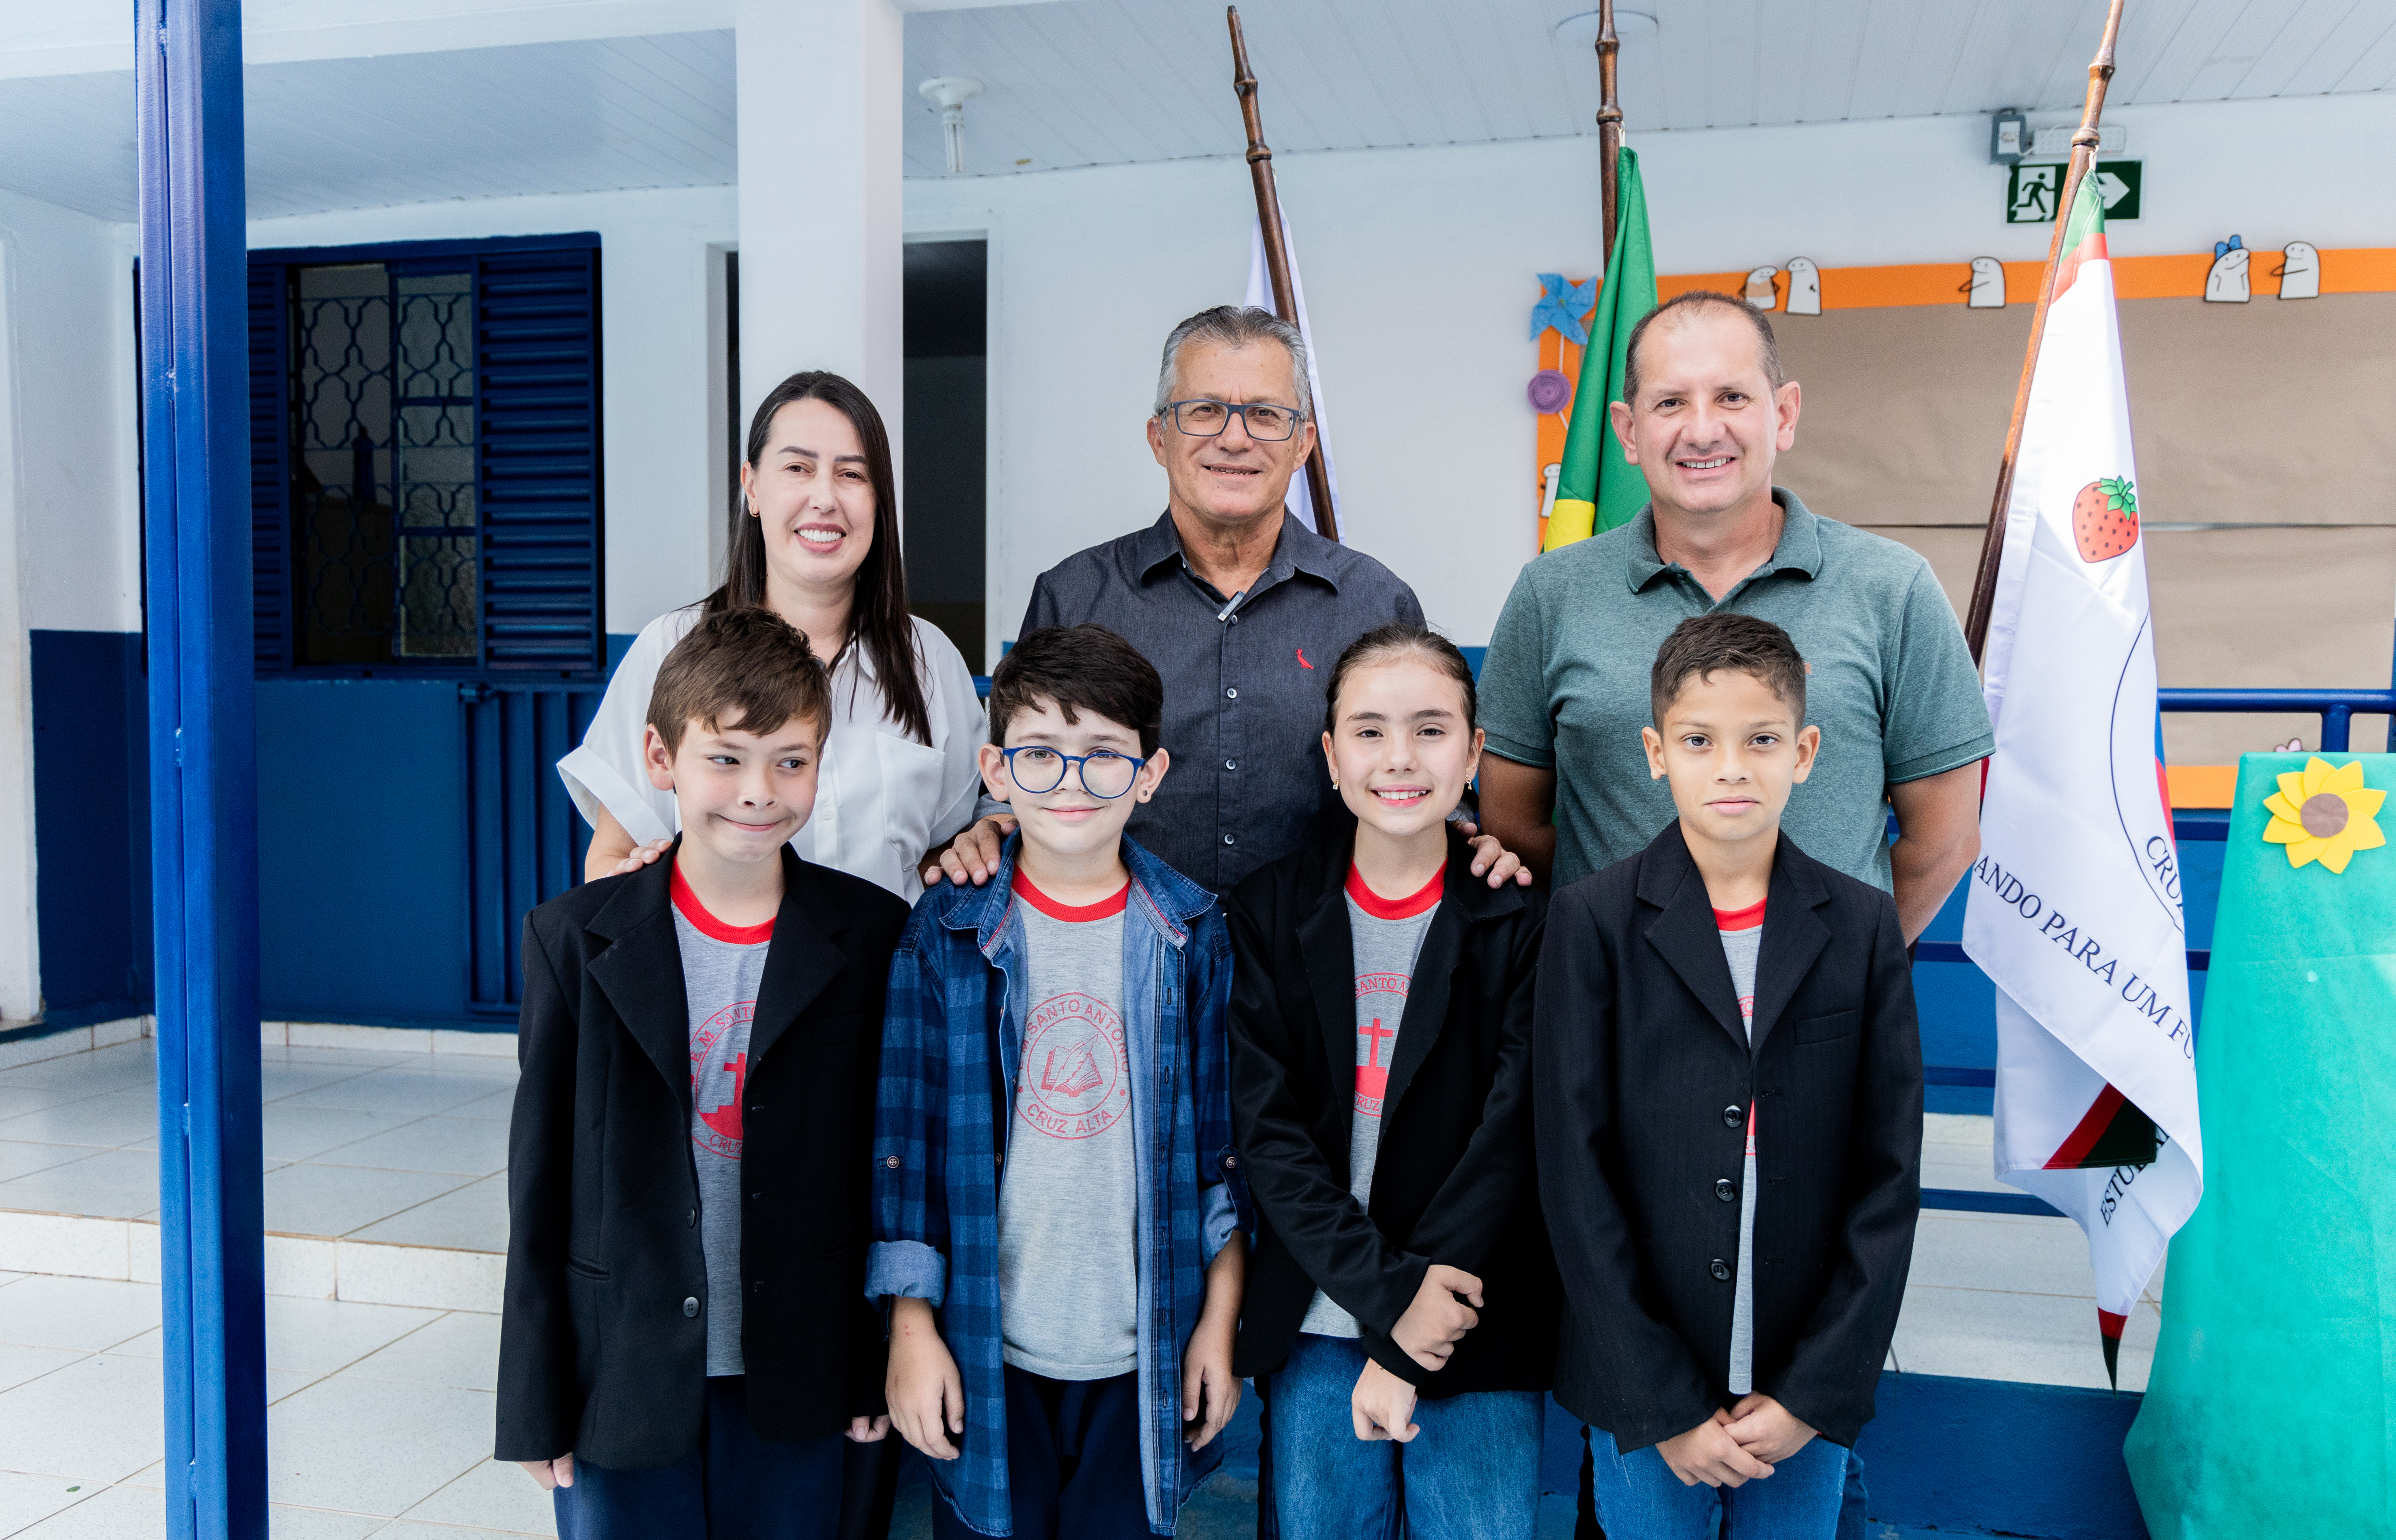 Imagem Noticia: Constituição em Miúdos: Escola Municipal Santo Antônio promove educação política entre crianças